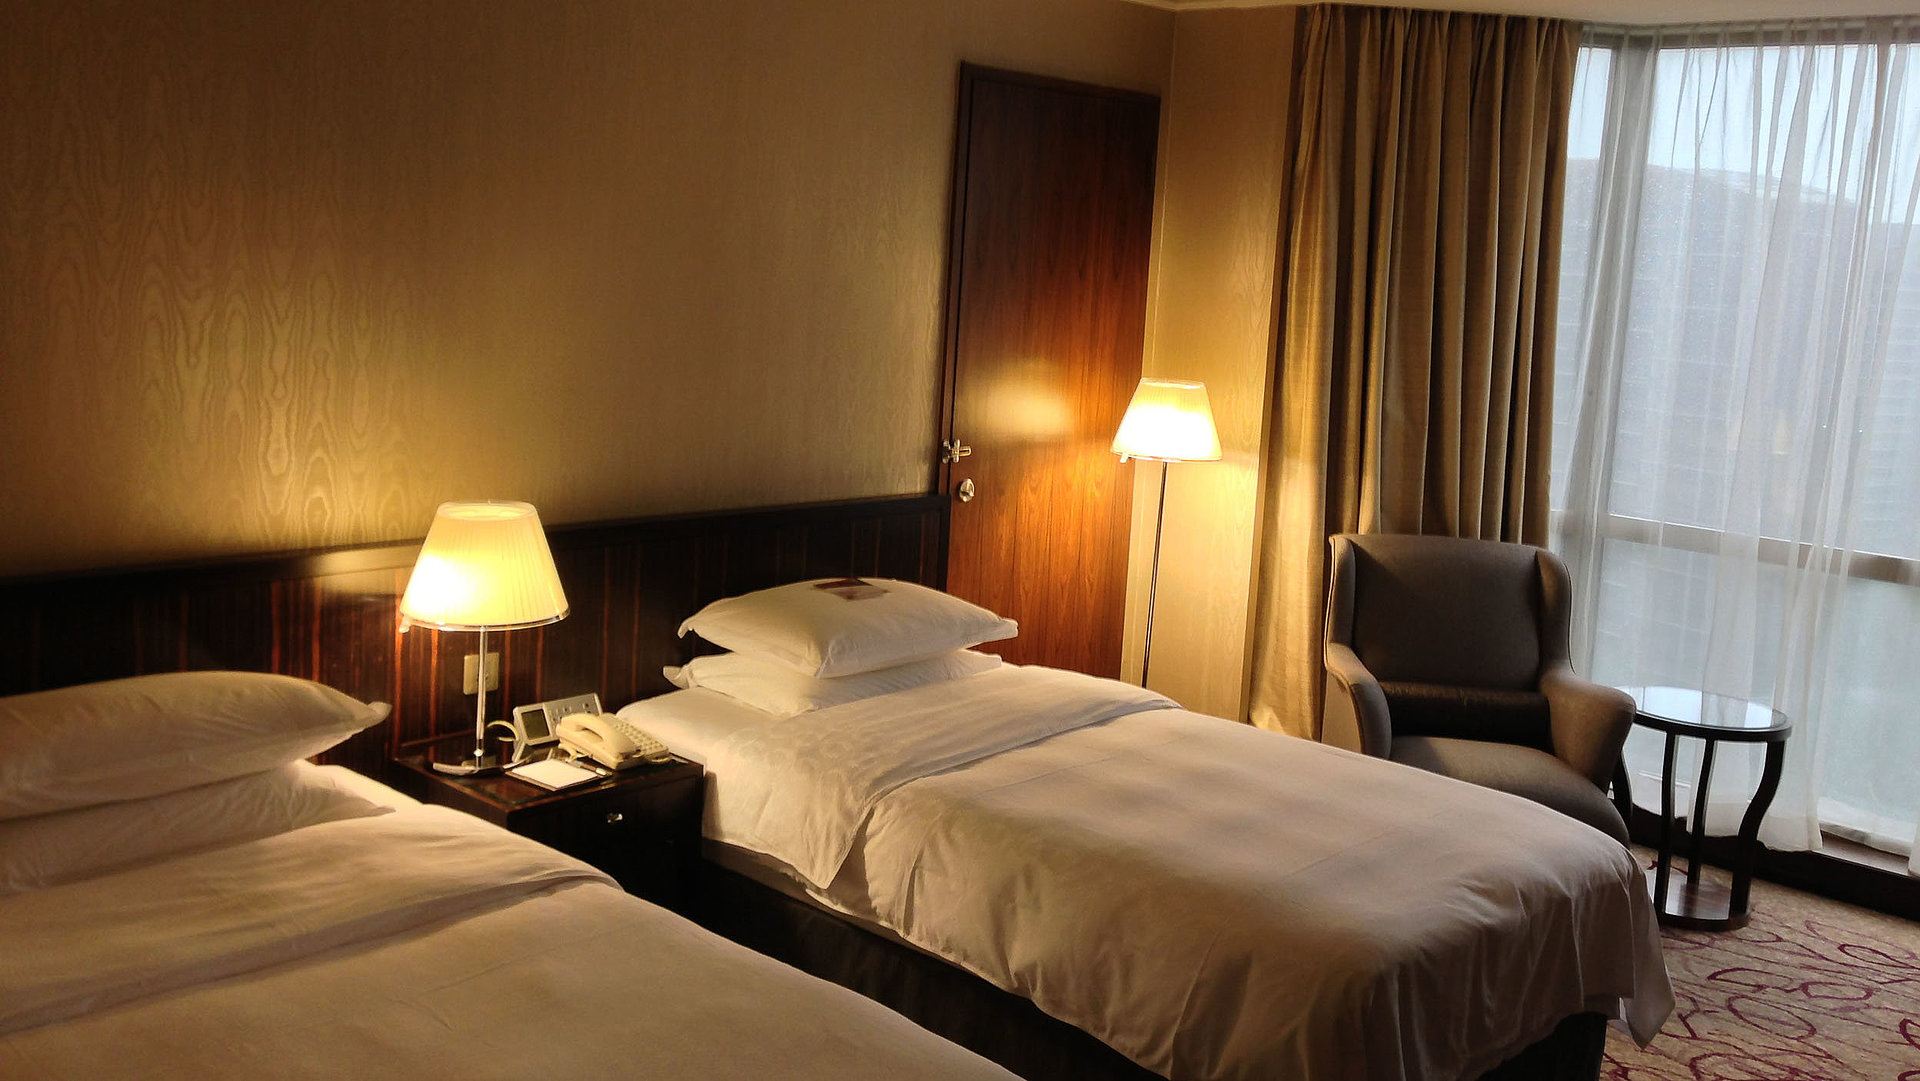 Unterkunft im Ostallgäu - sehr ordentliches Hotelzimmer mit zwei Betten, warmer Nachtlampe und Gardinen